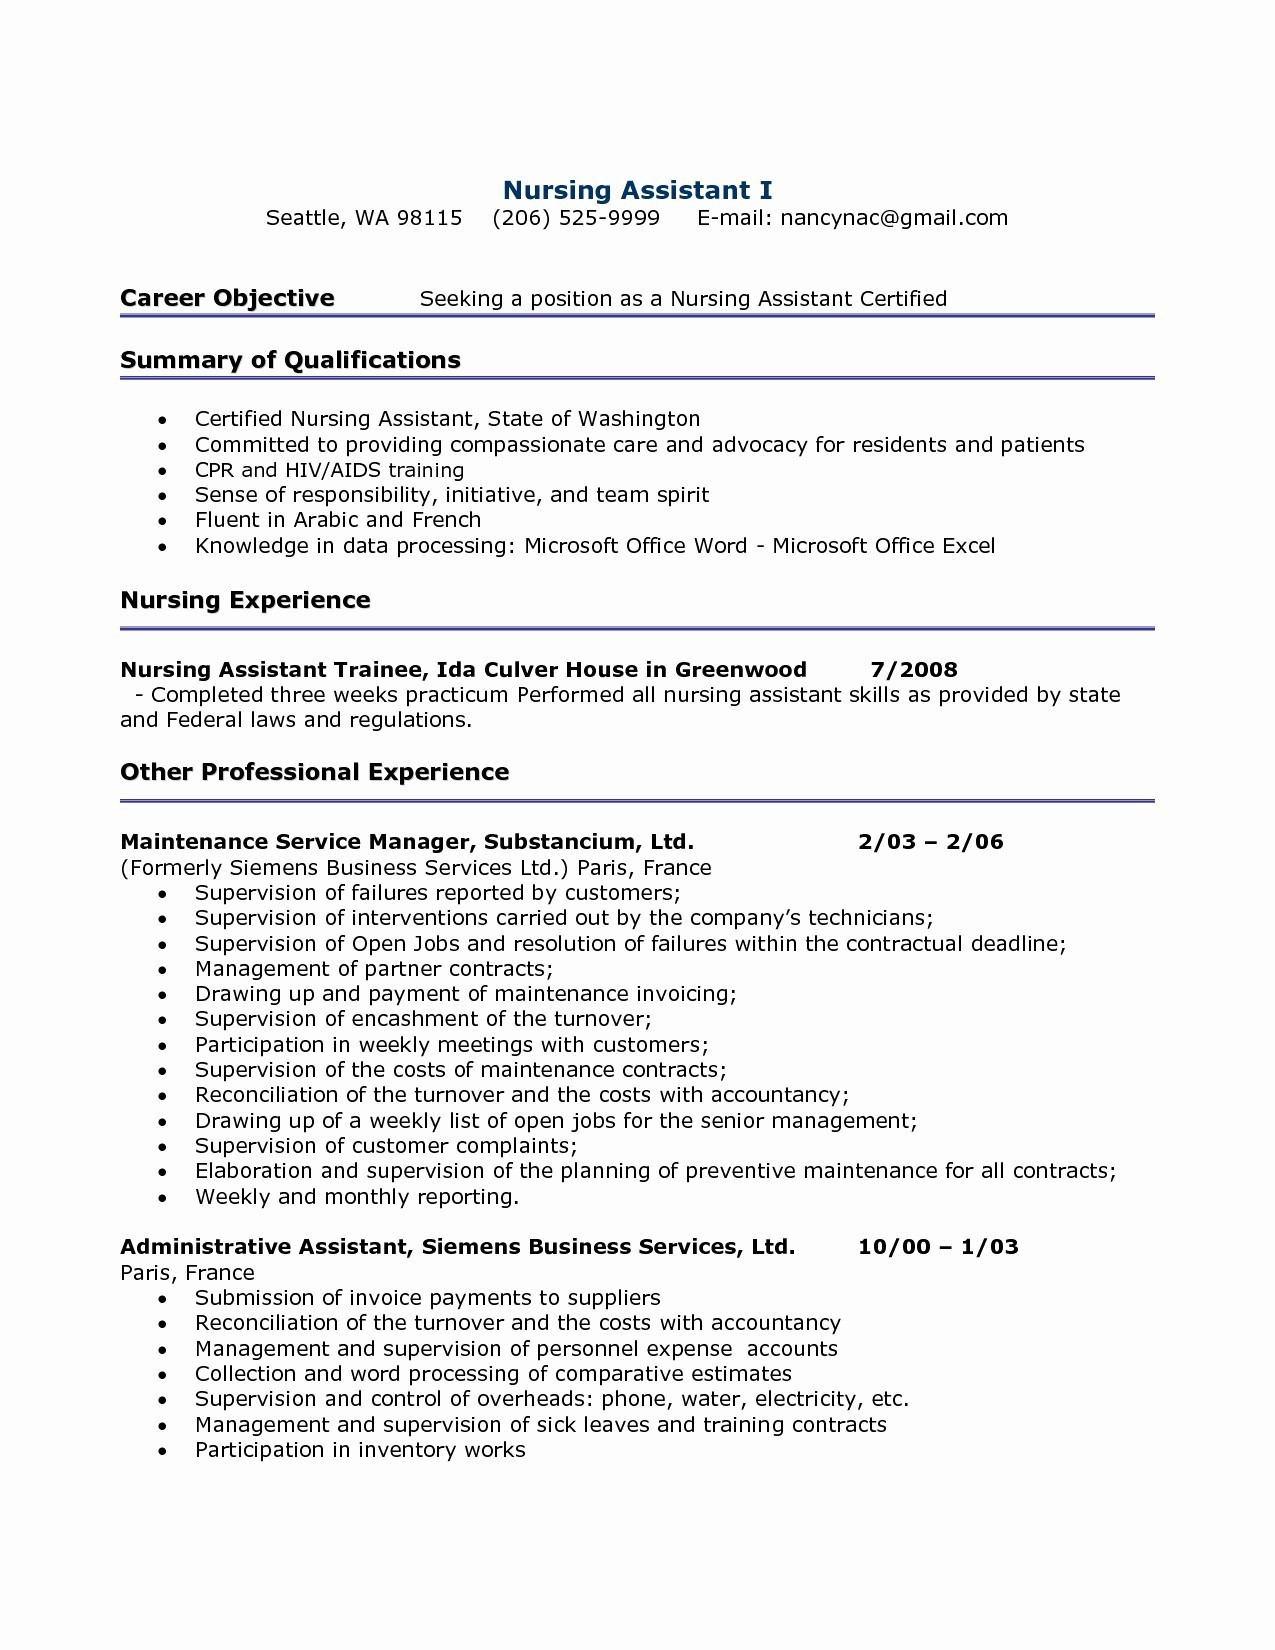 Cv Letter Template - Resume for Internship Unique Resume New Cover Letter Template Resume